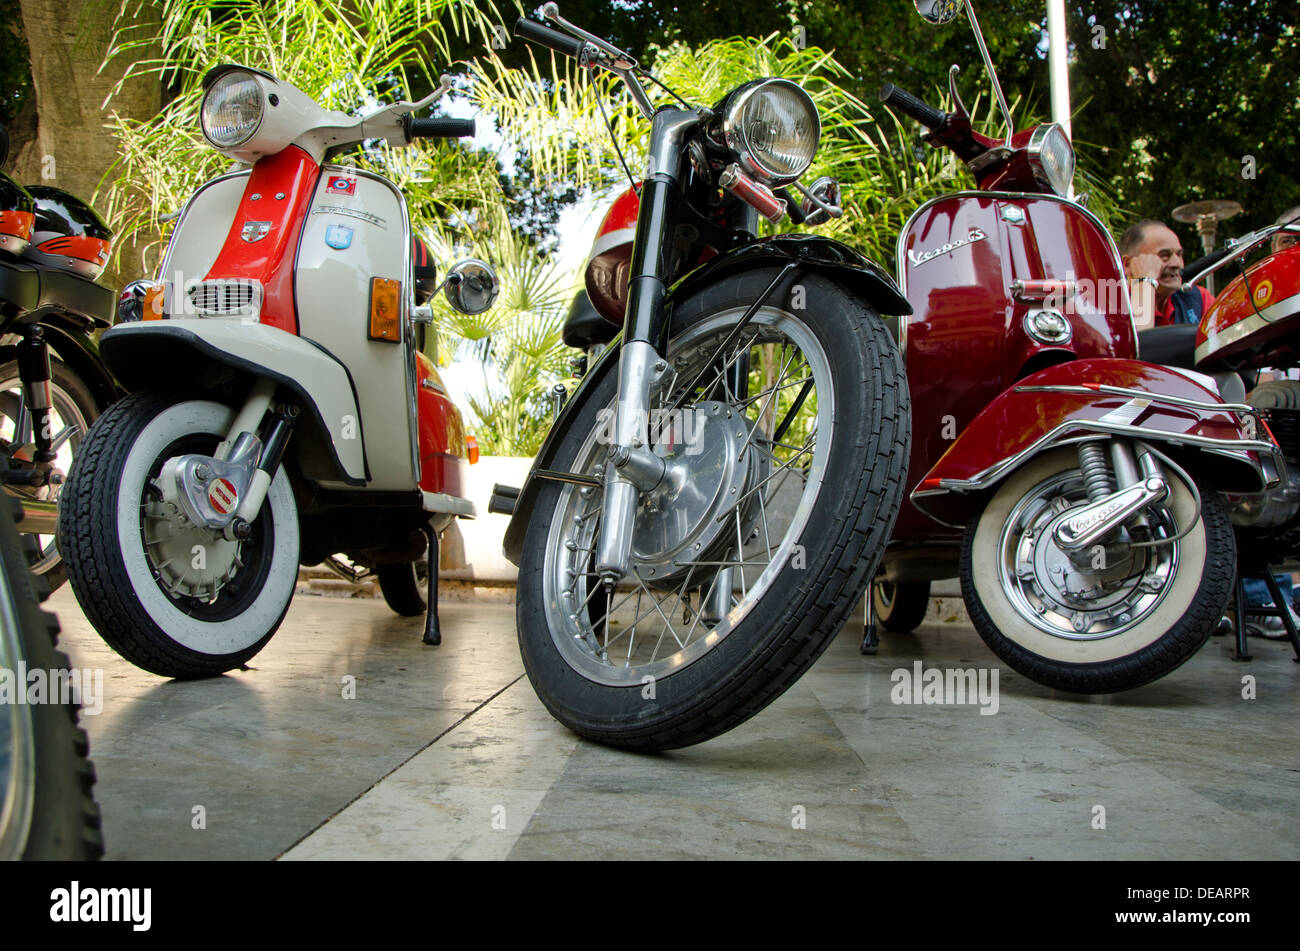 Route Ducati 250cc une Vespa GS et un Lambretta classic motorcycles lors d'une réunion à moto vintage Coin, Andalousie, espagne. Banque D'Images